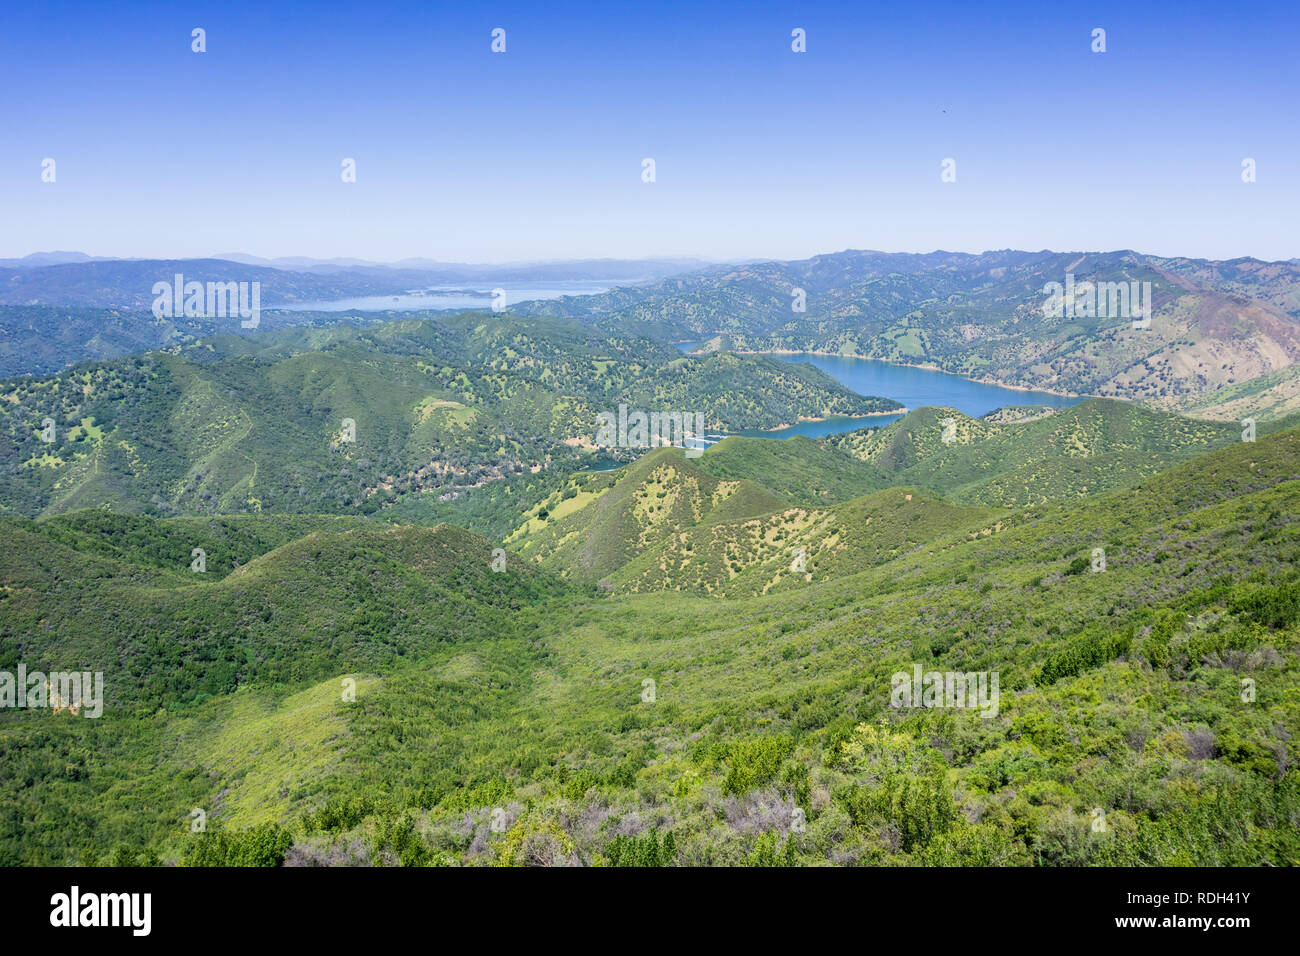 Vue aérienne des verdoyantes collines dans le sud de l'In Berryessa lake, Stebbins Cold Canyon, Napa Valley, Californie Banque D'Images